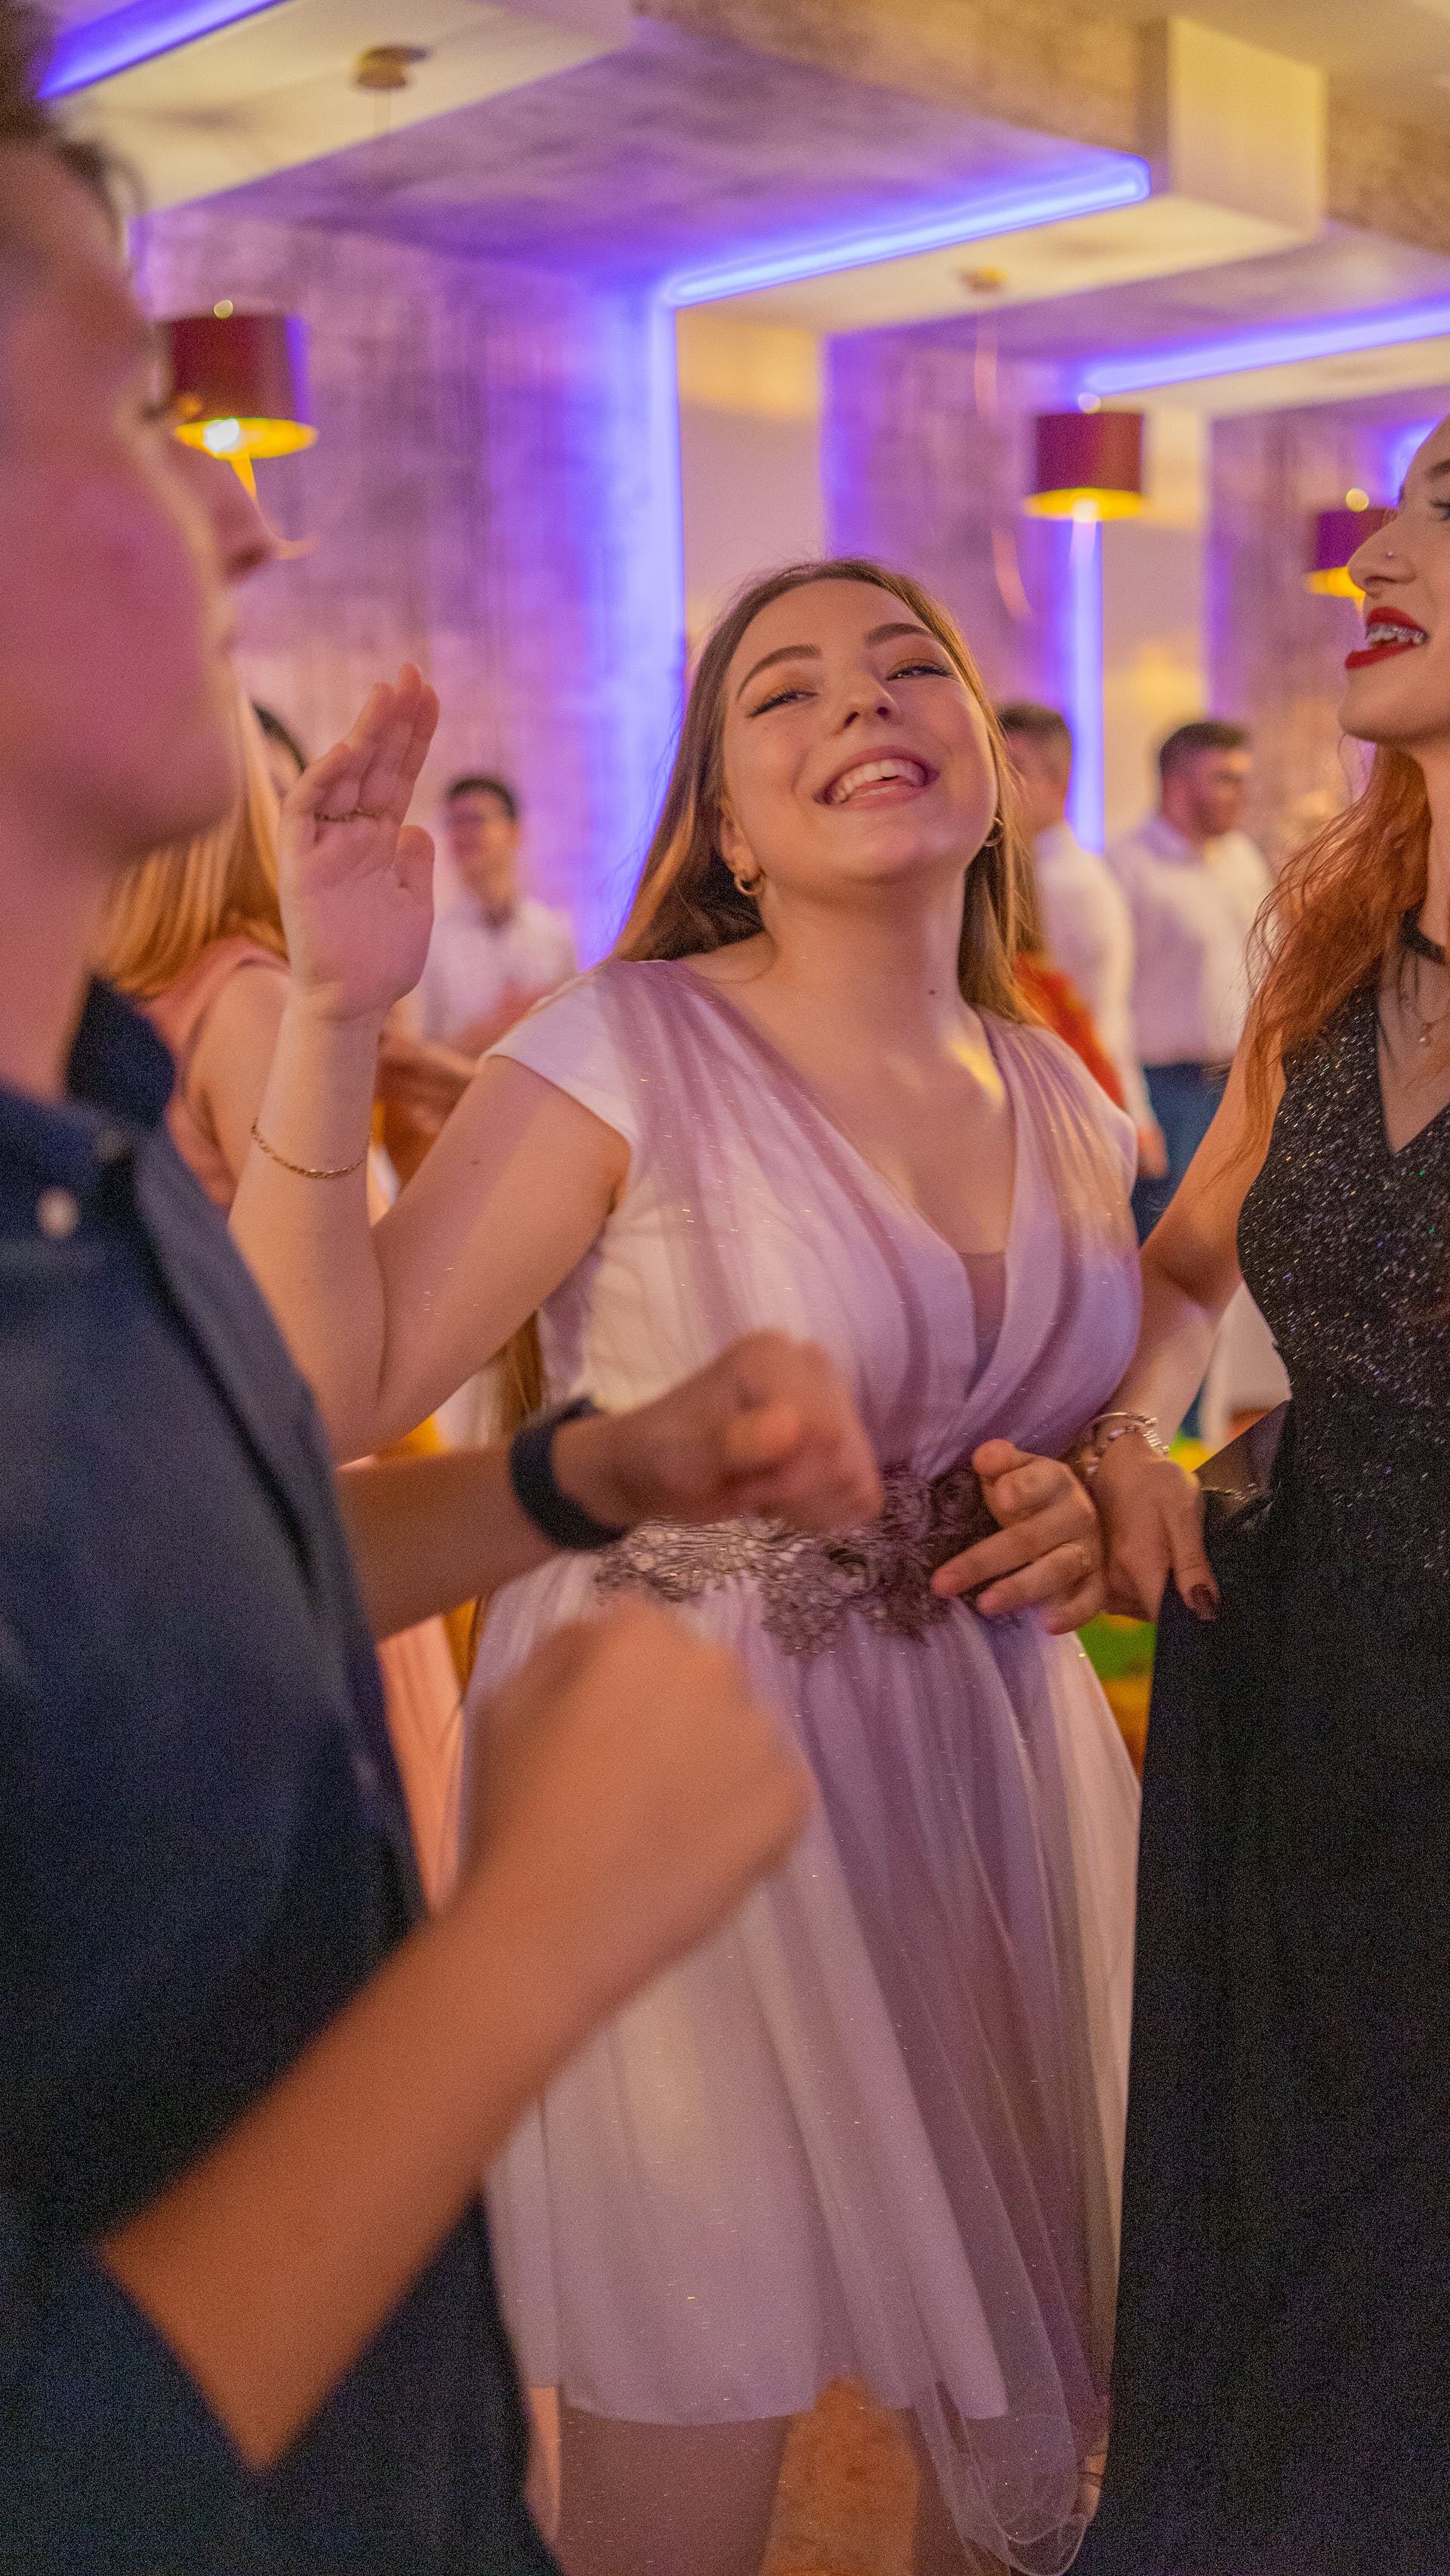 Une femme qui danse lors d'une réception de mariage | Source : Pexels